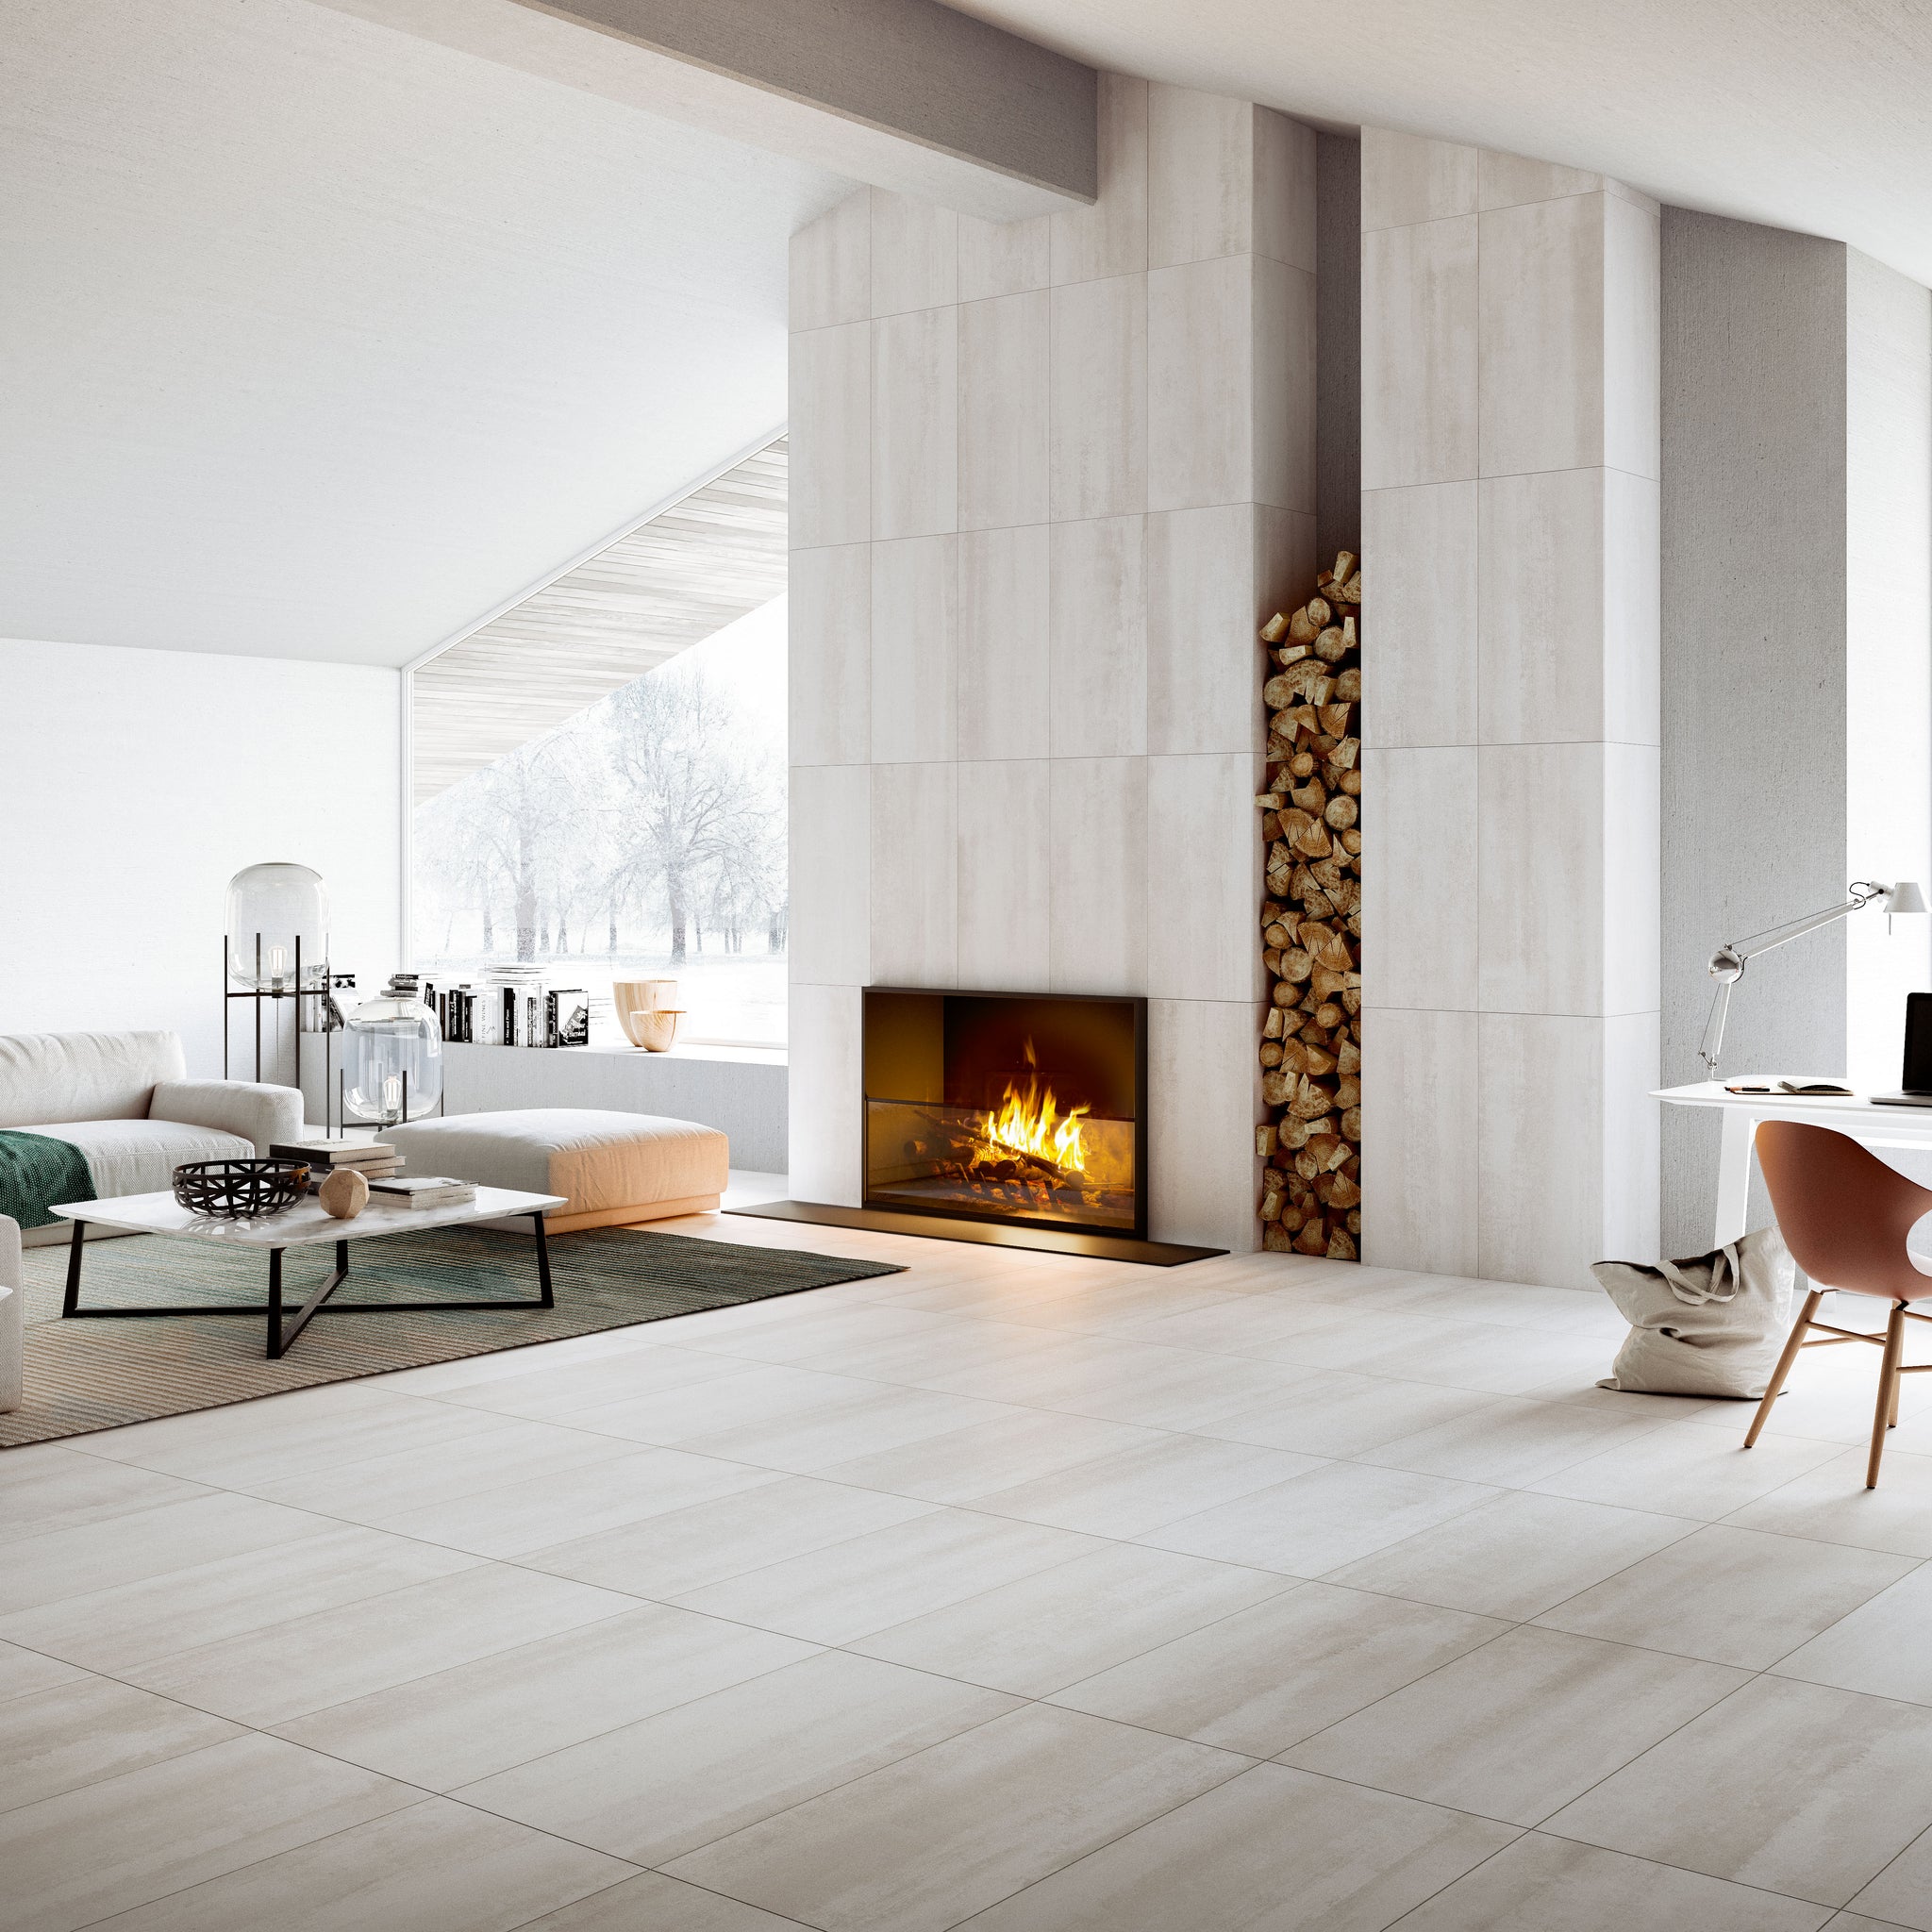 Overlay Salon Blanc / Overlay Living room White